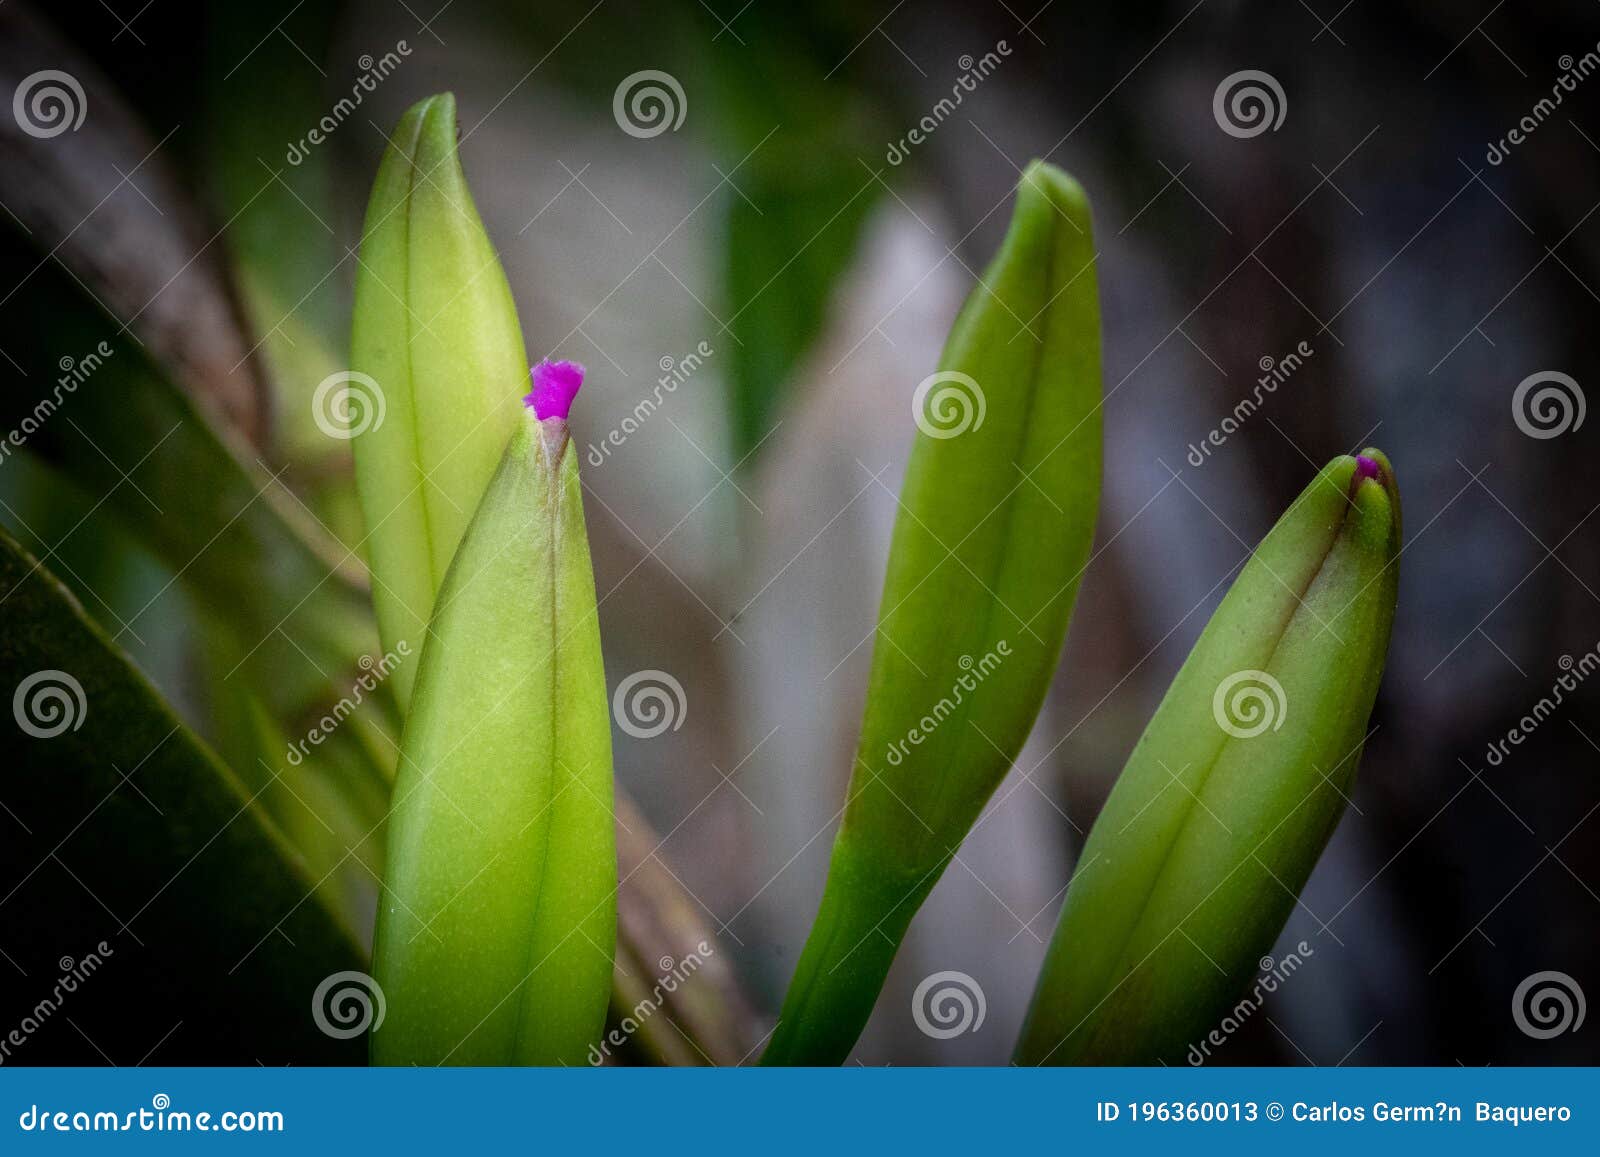 pequeÃÂ±a orquidea comenzando a florecer